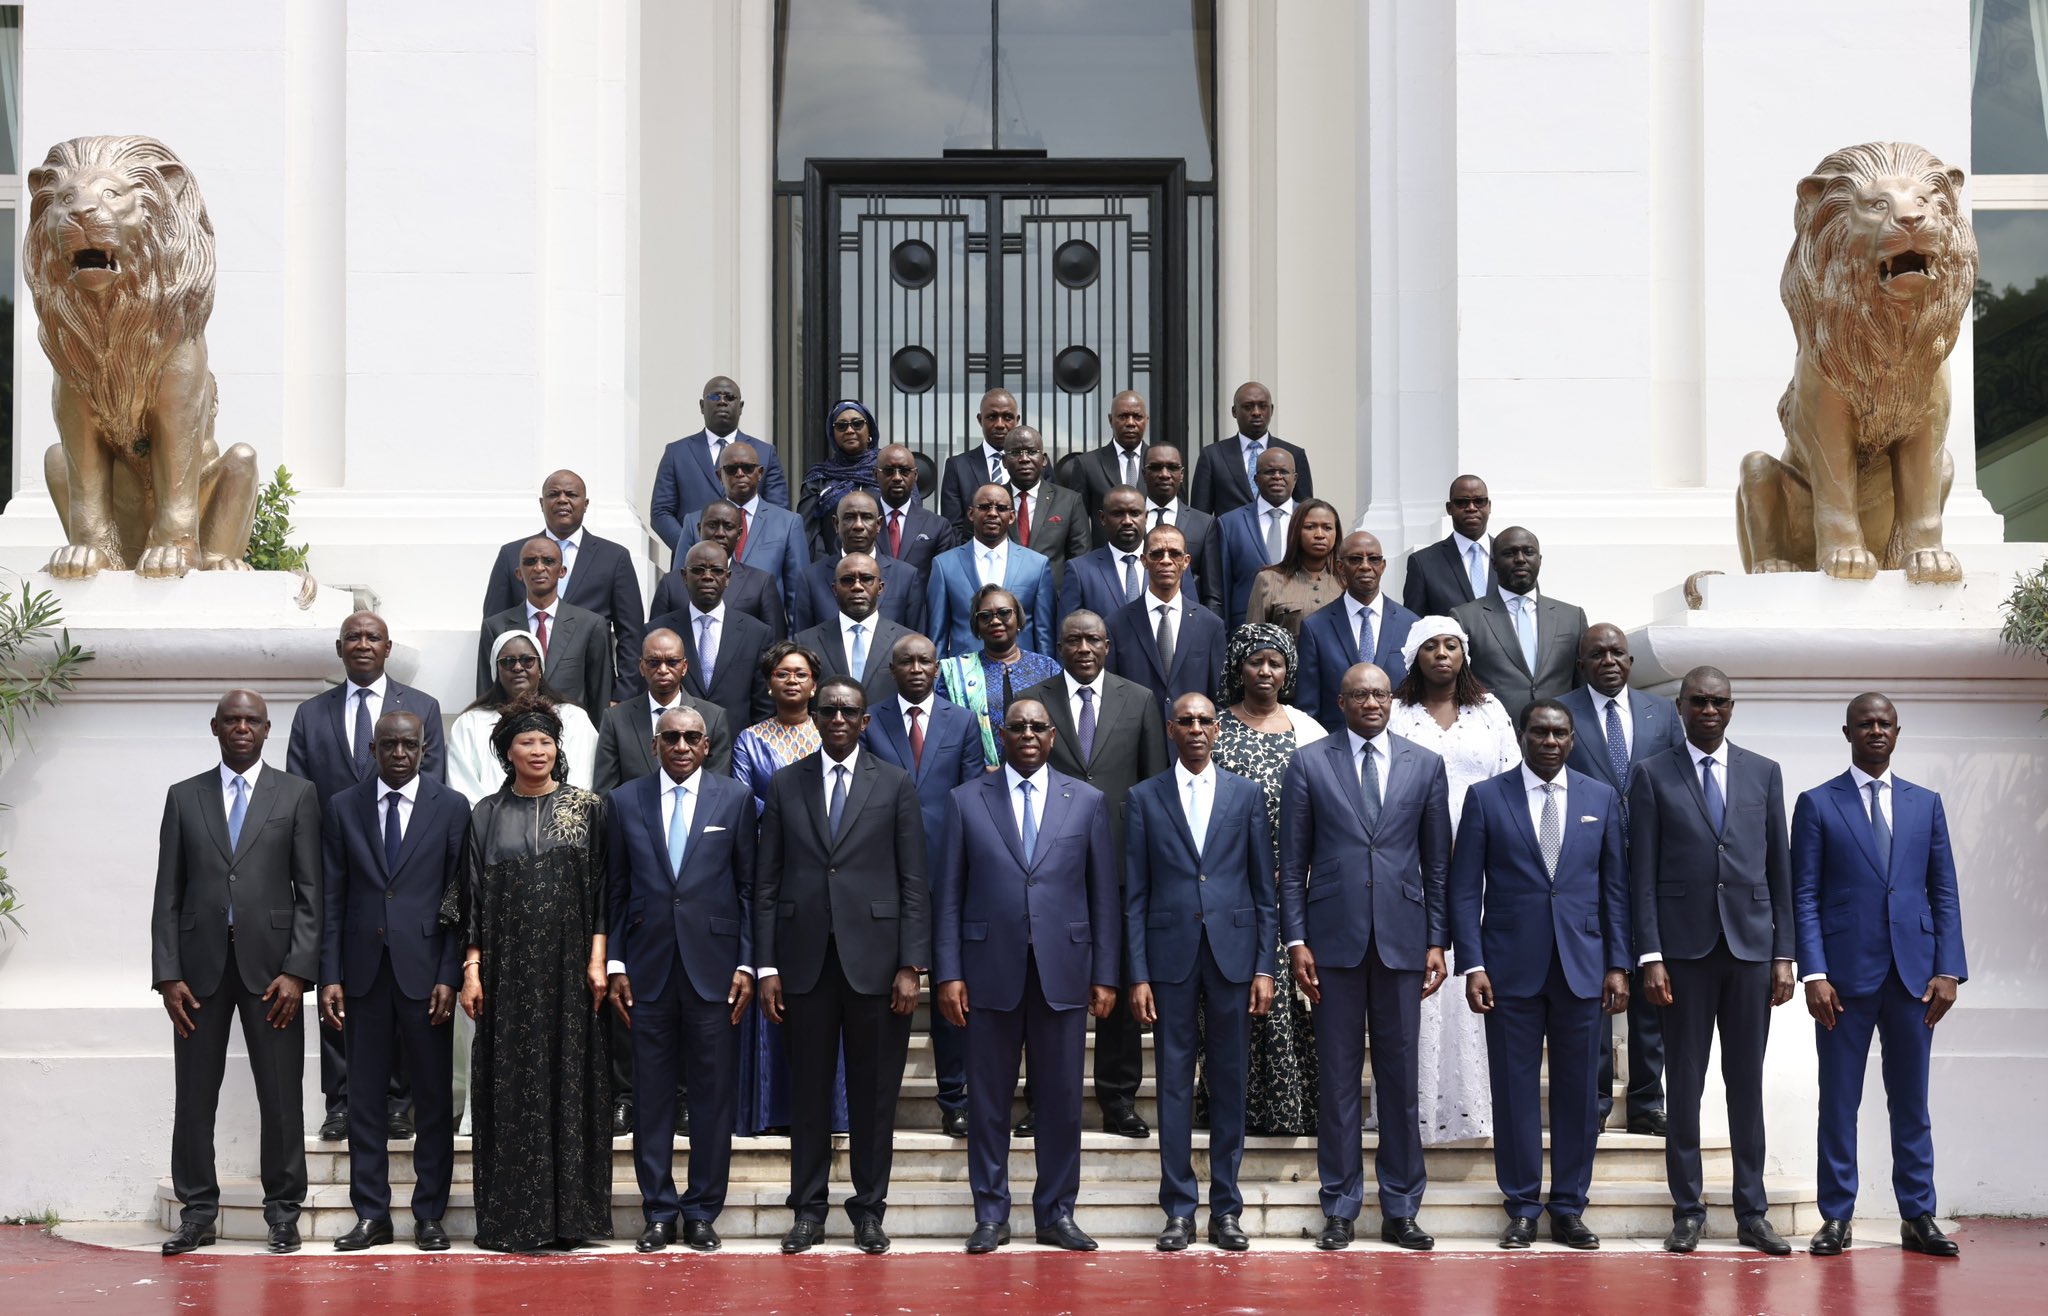 Sénégal : COMMUNIQUE DU CONSEIL DES MINISTRES  DU MERCREDI 28 SEPTEMBRE 2022